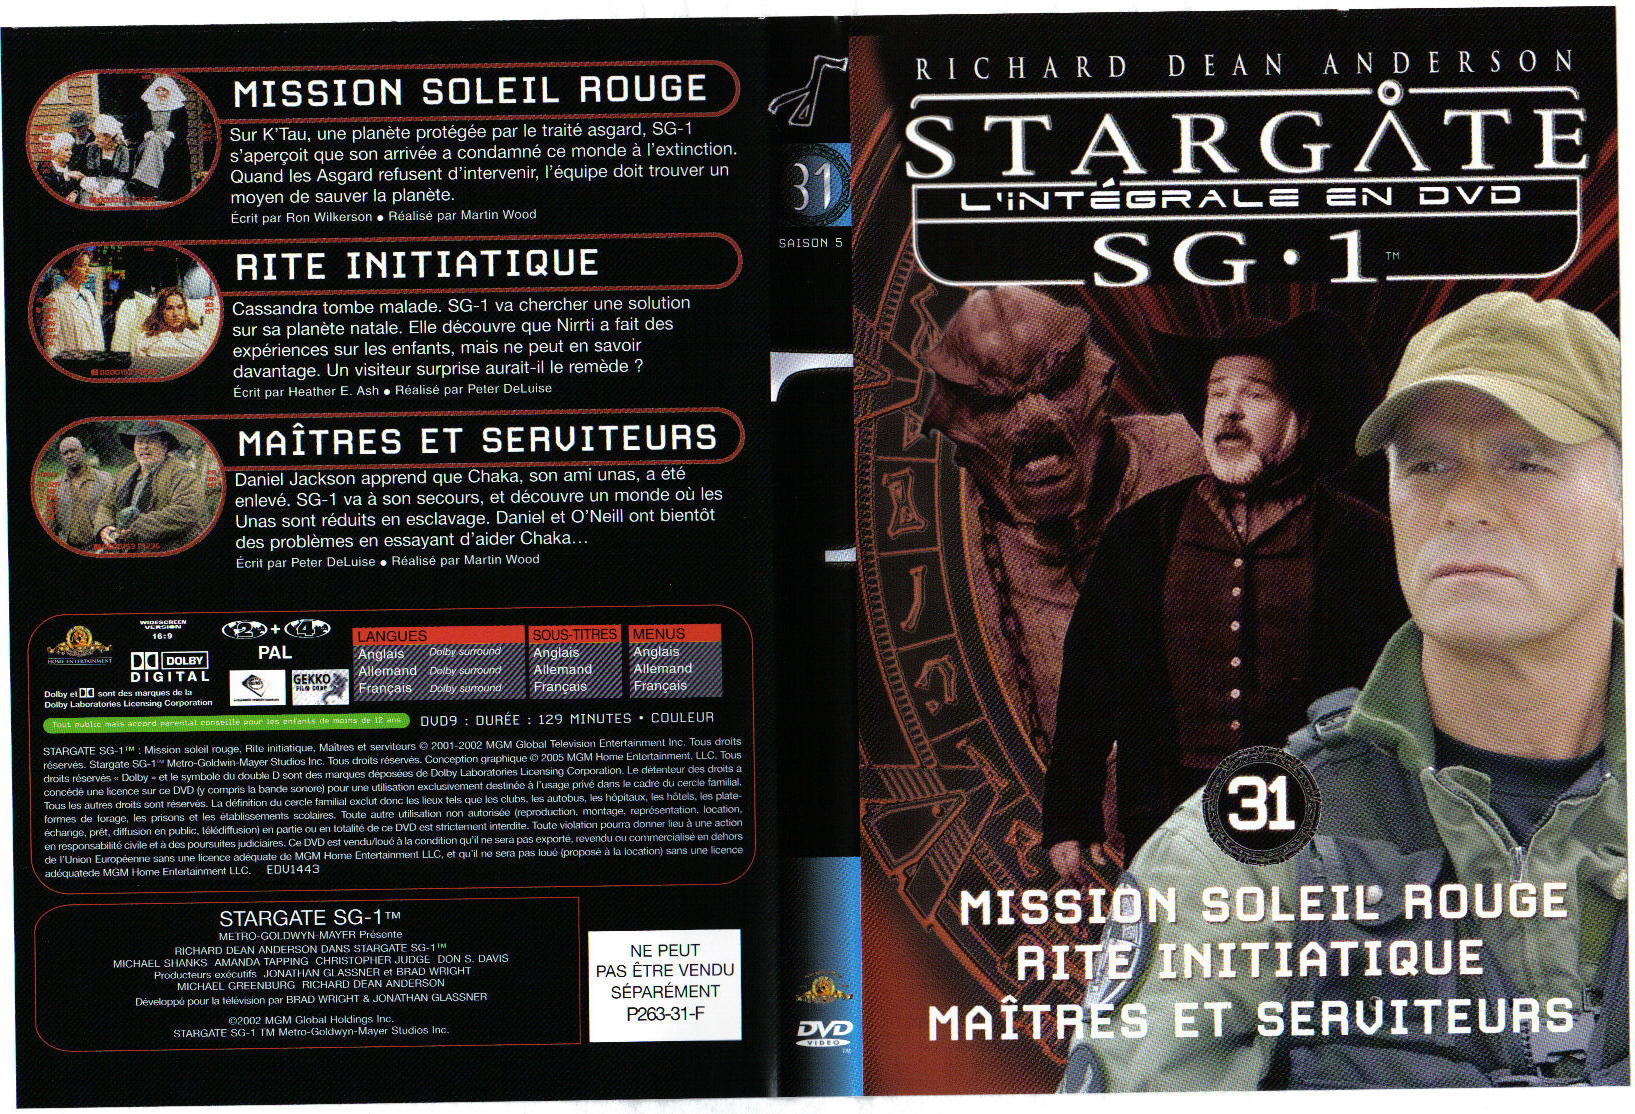 Jaquette DVD Stargate saison 5 vol 31